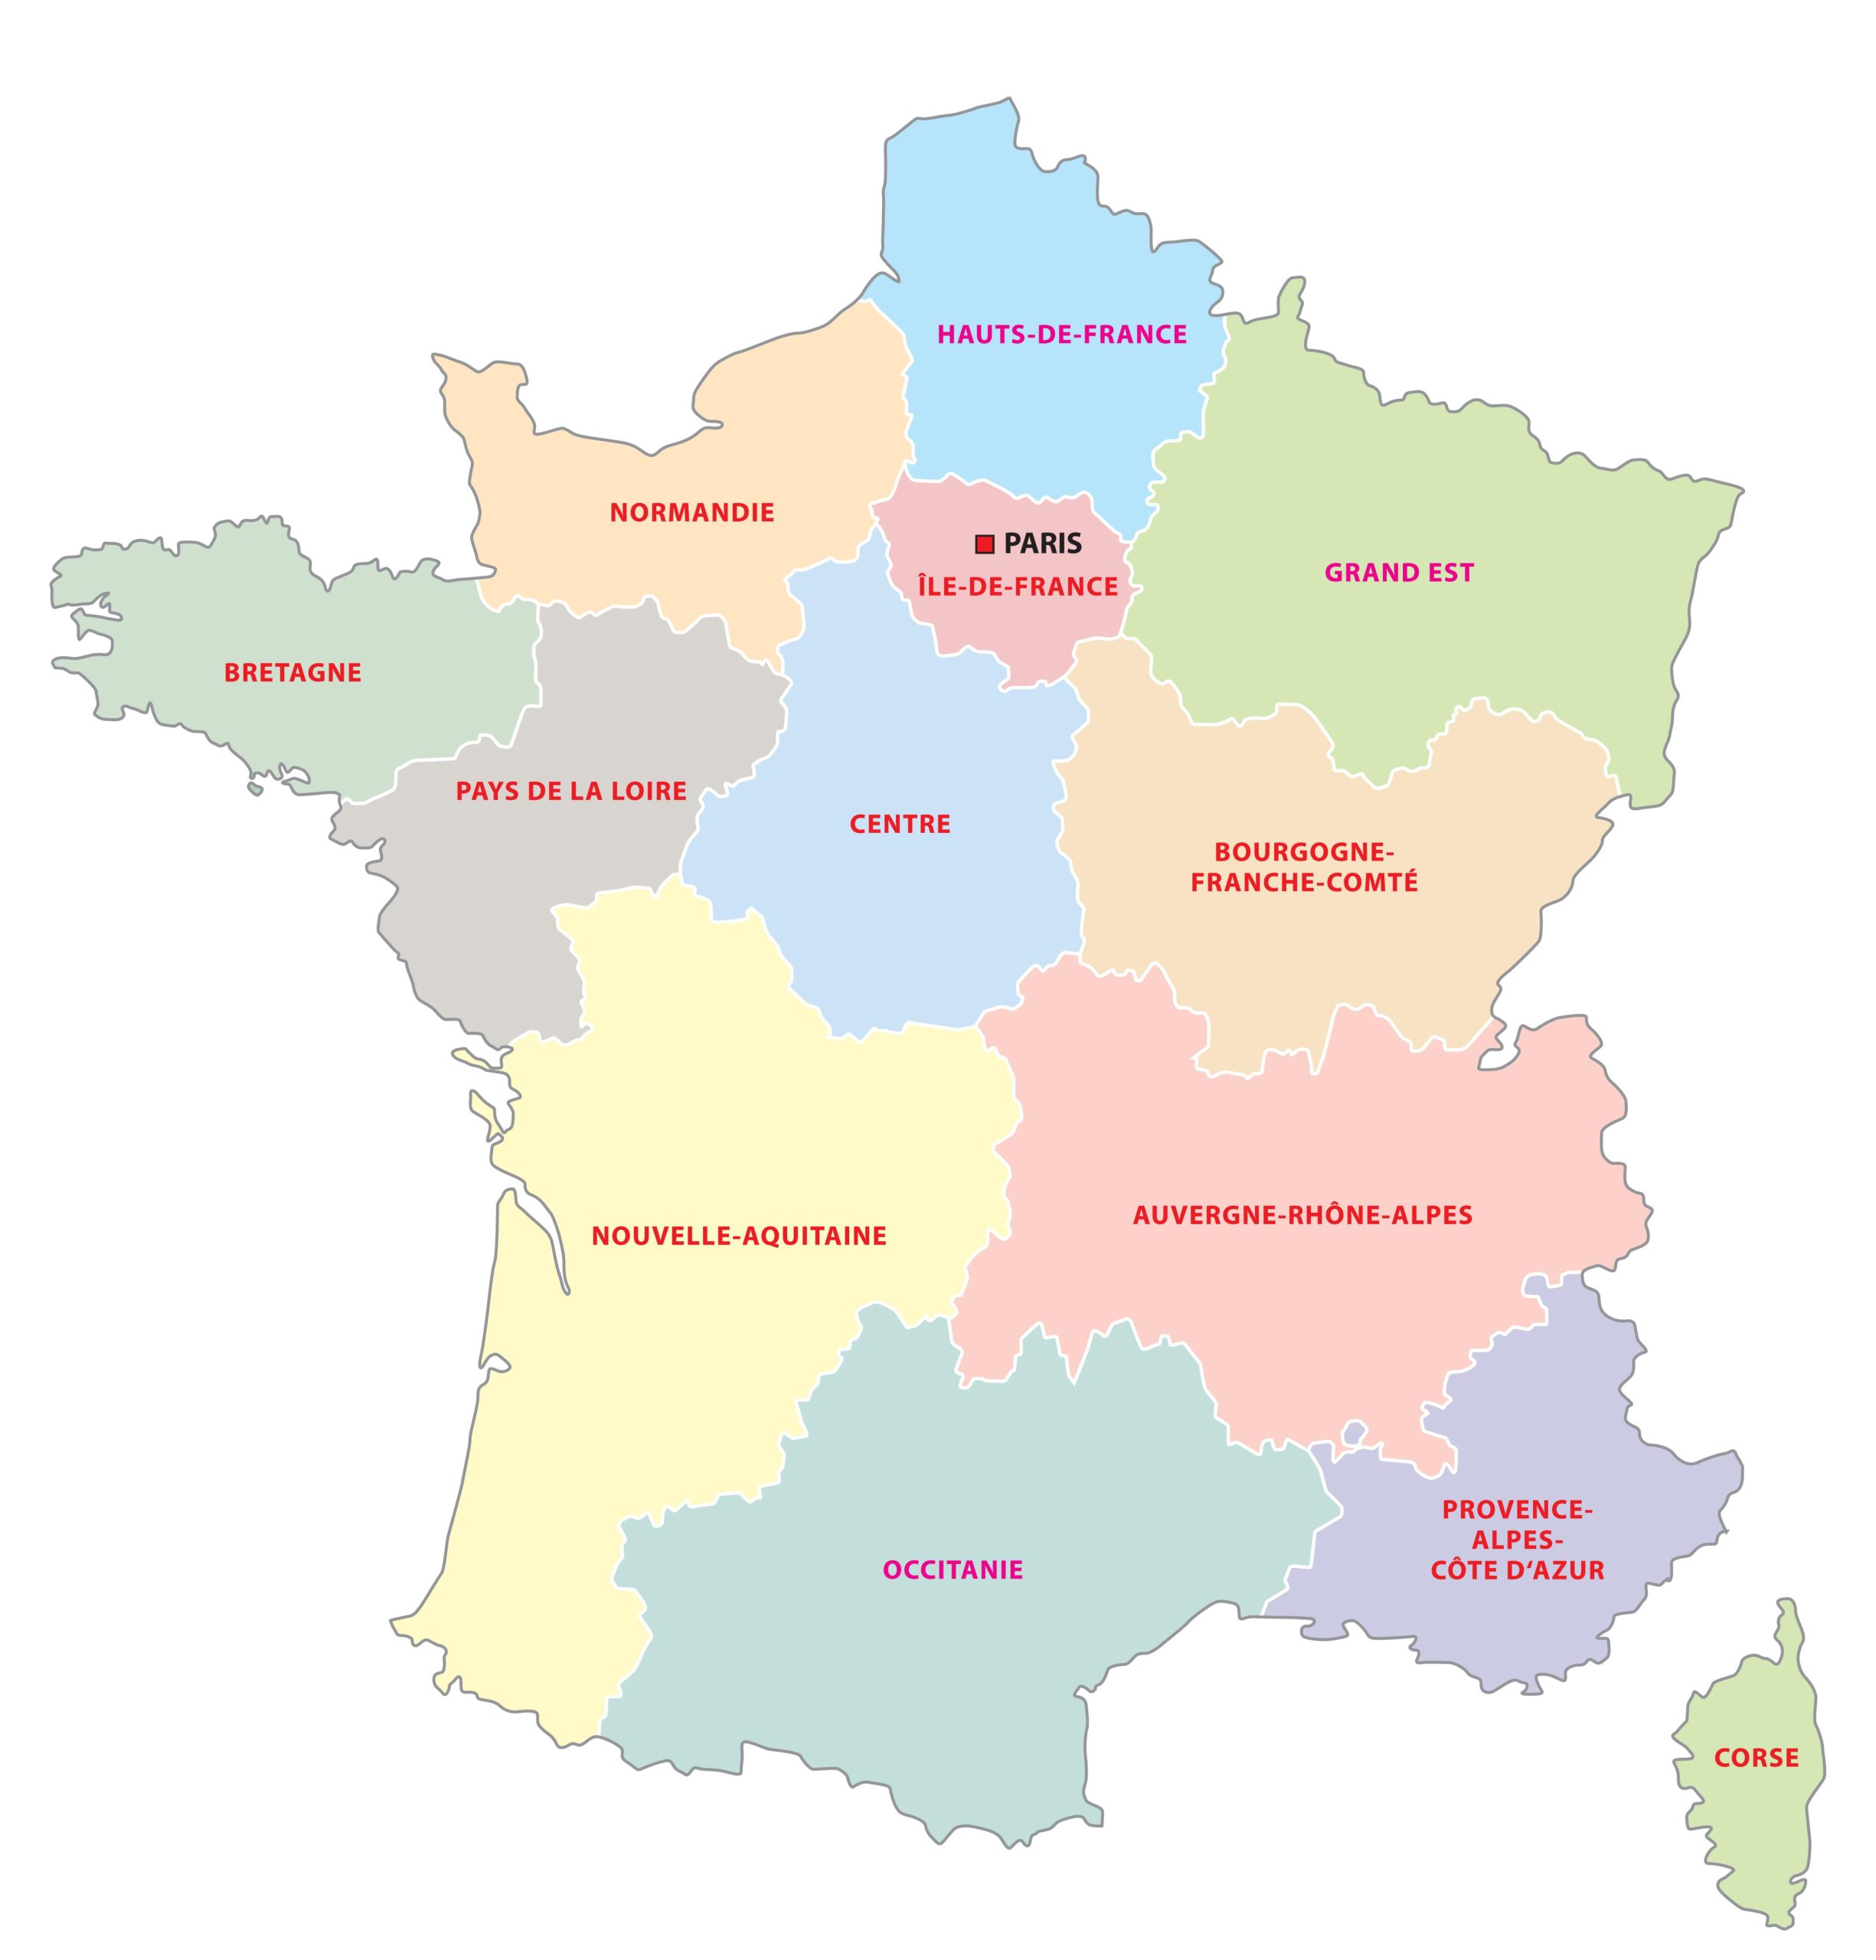 13 administrative regions of La France métropolitaine